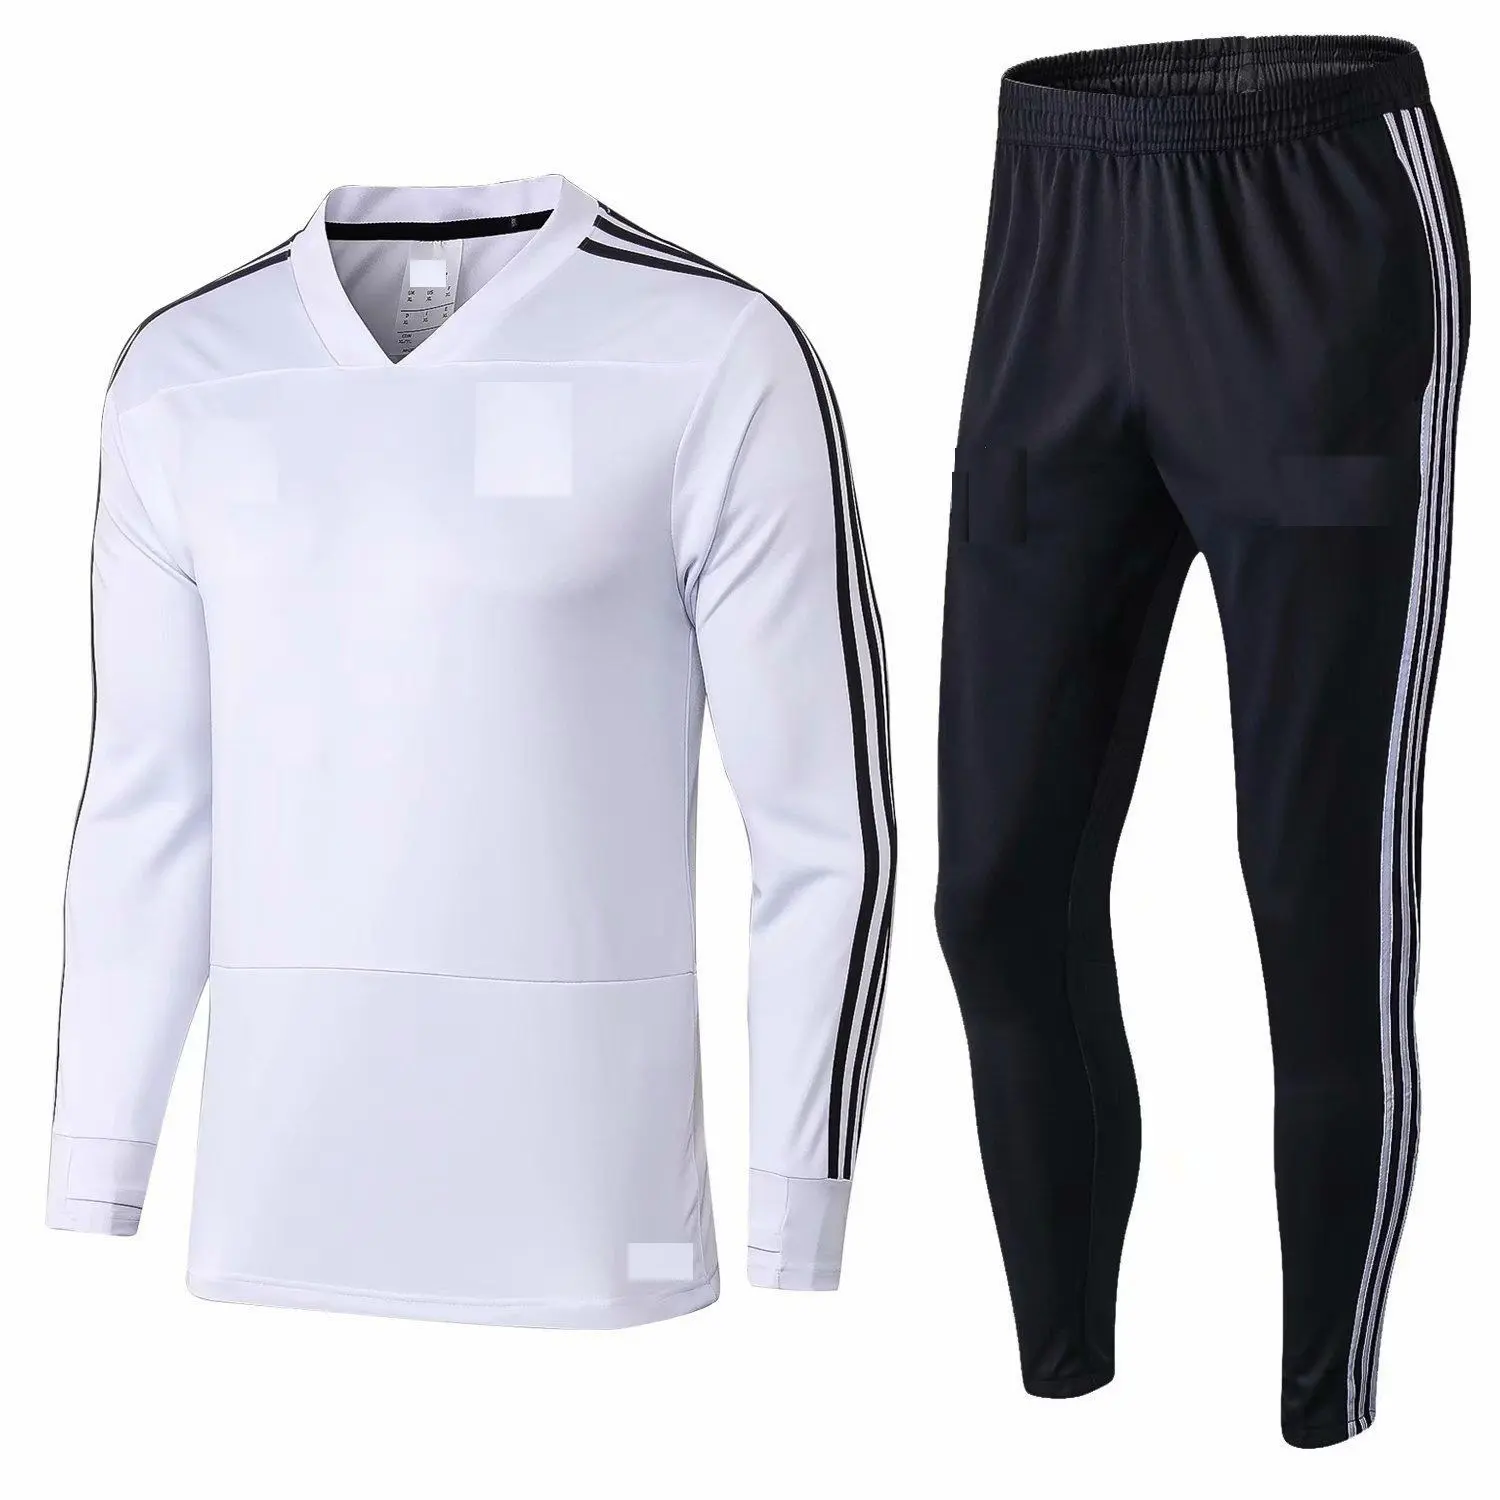 Высококачественные мужские трикотажные штаны для бега, спортивный эластичный тренировочный костюм, мужские прямые брюки, одежда для бега, бега, тренажерного зала, тренировок